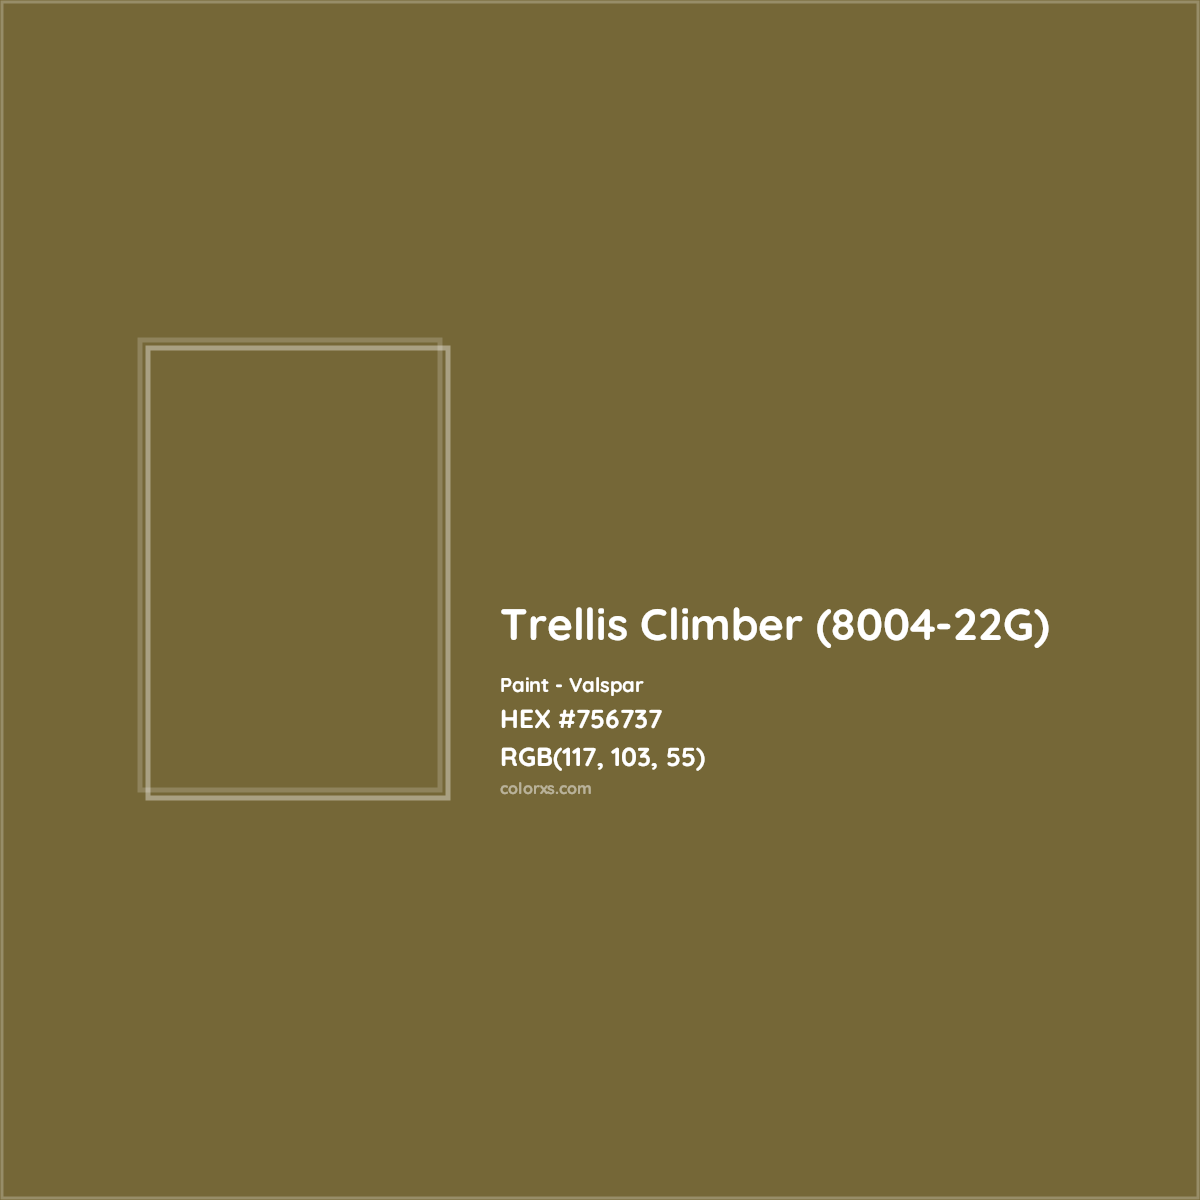 HEX #756737 Trellis Climber (8004-22G) Paint Valspar - Color Code